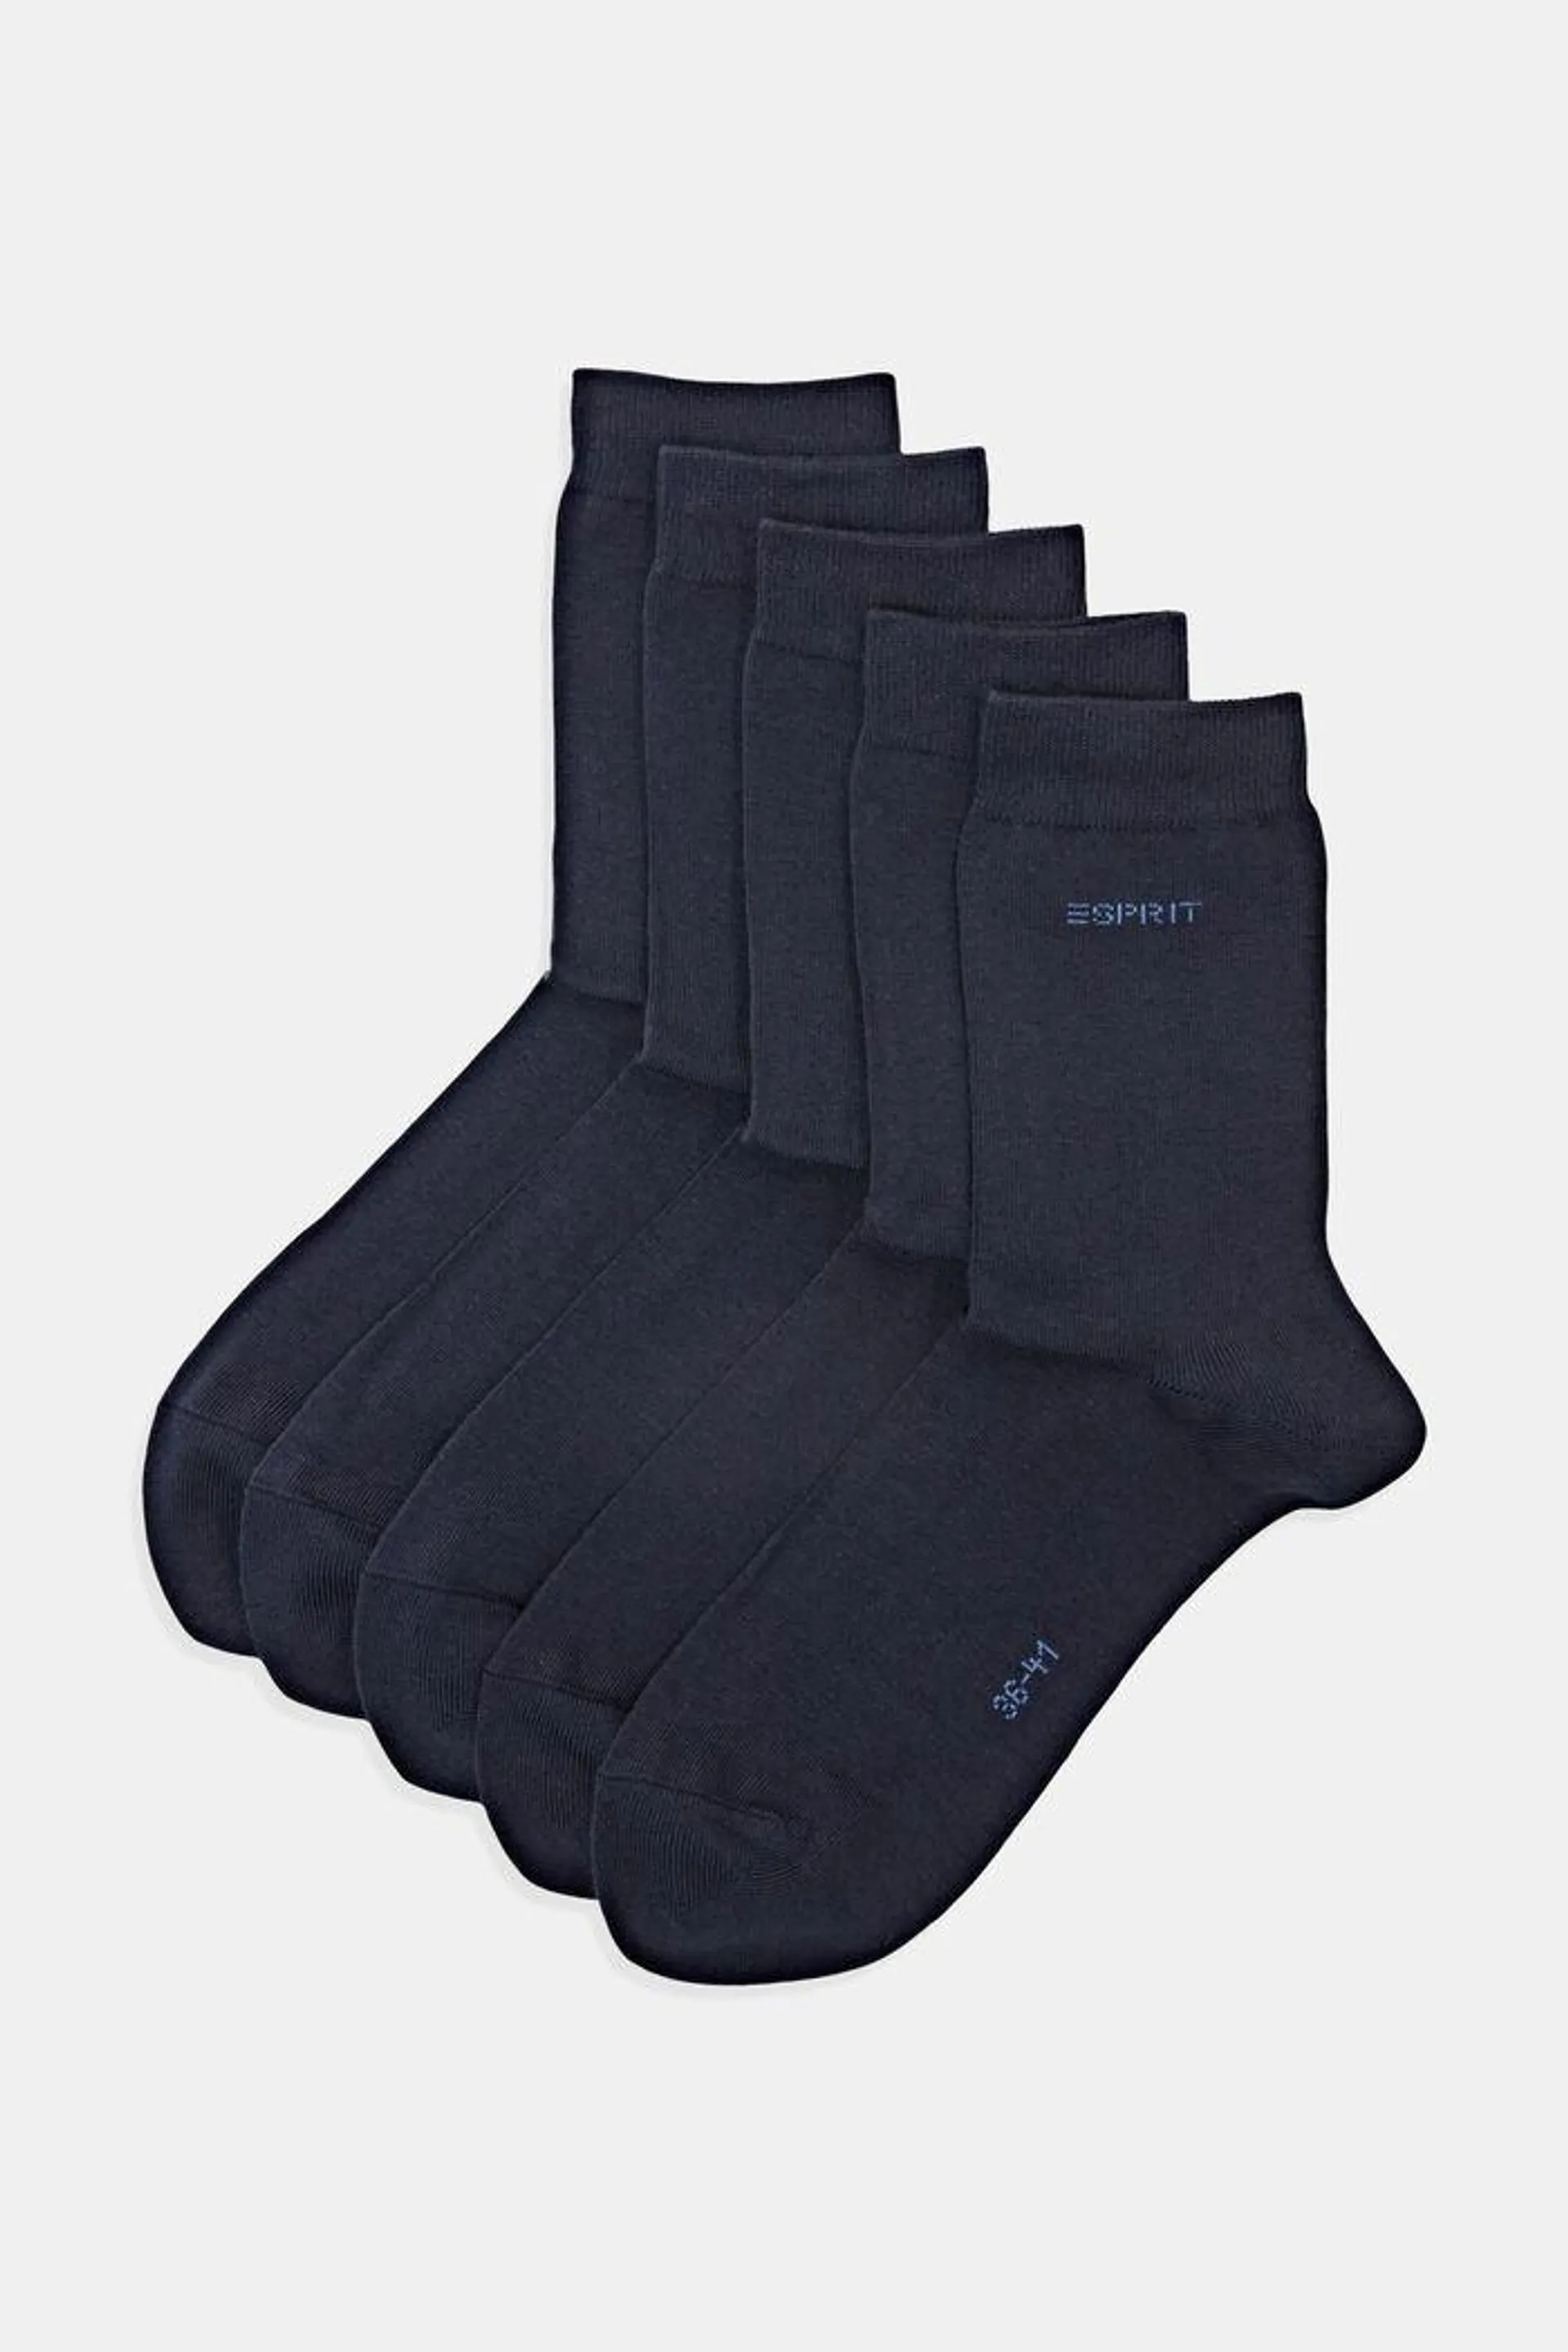 Pack de cinco pares de calcetines unicolor, algodón ecológico